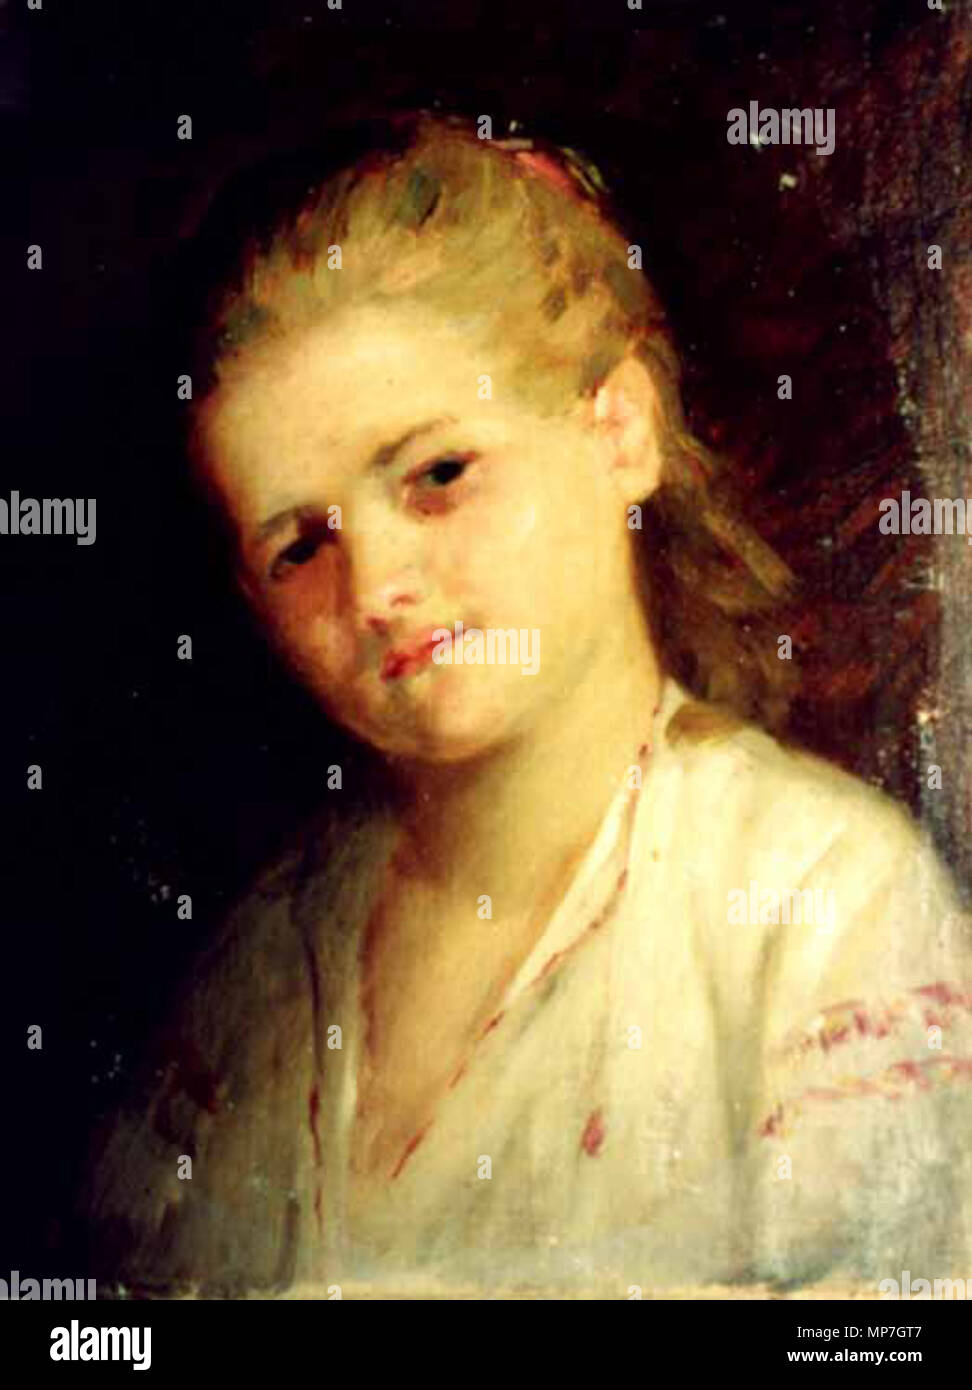 . Sava Henţia (1848 - 1904) - Cap de fetiţă. Portret de fetiţă, busto, văzut frontale, capul uşor înclinat spre stânga cadrului, părul - până la umeri - este strâns parţial la ondata. Îmbrăcată într-o ie albă, brodată cu arnici roşu şi deschisă la gât. Fondul este brun, uniforme. Realizarea plastică spontană, în tuşe rapide sigure şi. Cromatica dominantă este de brunuri, ocruri, alb şi accente de roşu. Semnat stânga spre mijloc, în câmp, cu ocru 'S. Henţia'. Muzeul Municipiului Bucureşti - BUCUREŞTI . Data sconosciuta. 1097 Sava Hentia - Cap de fetita Foto Stock